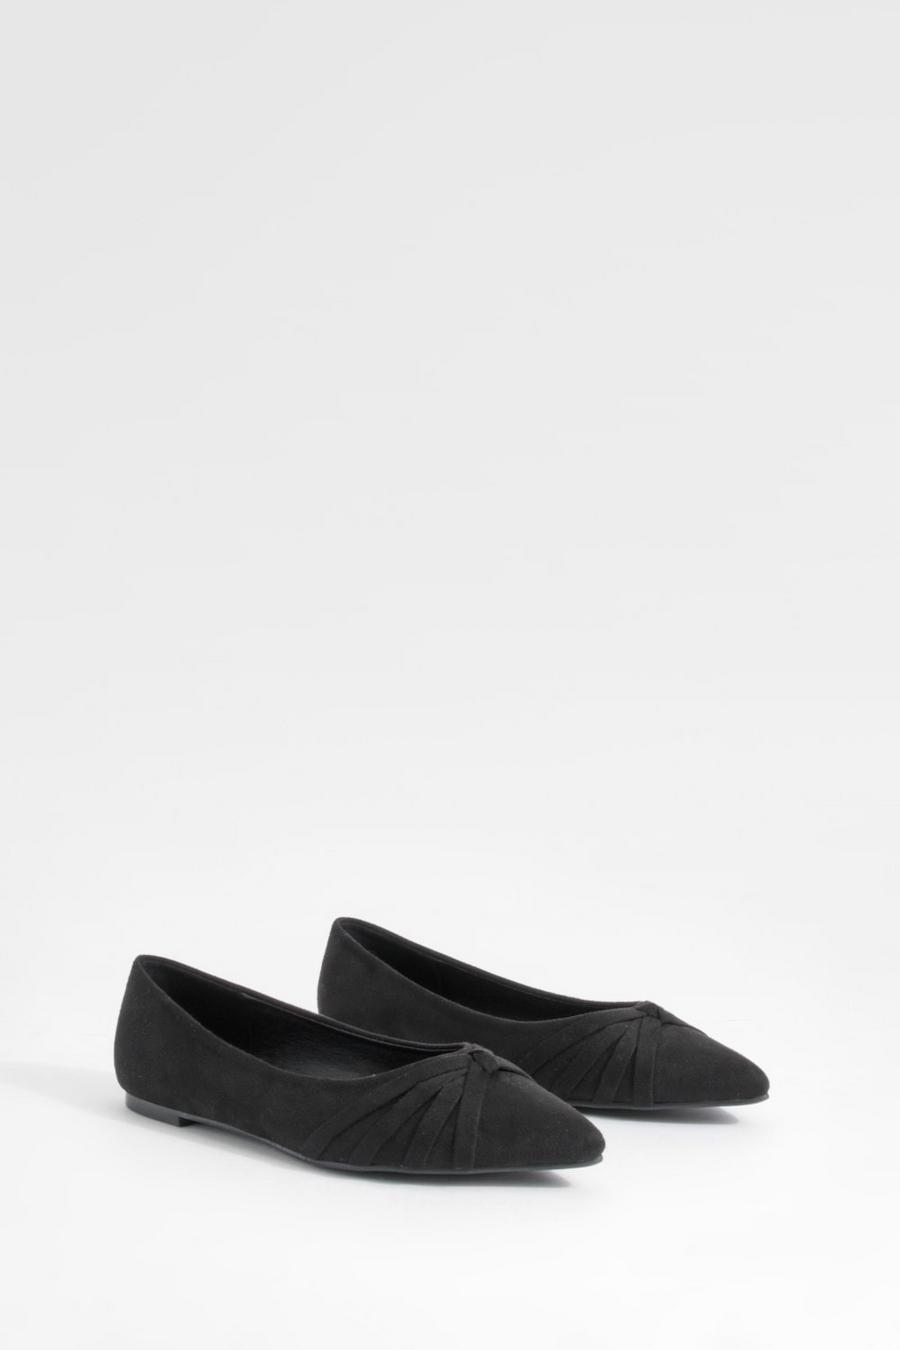 Zapatos planos de holgura ancha con puntera de pico y nudo frontal, Black